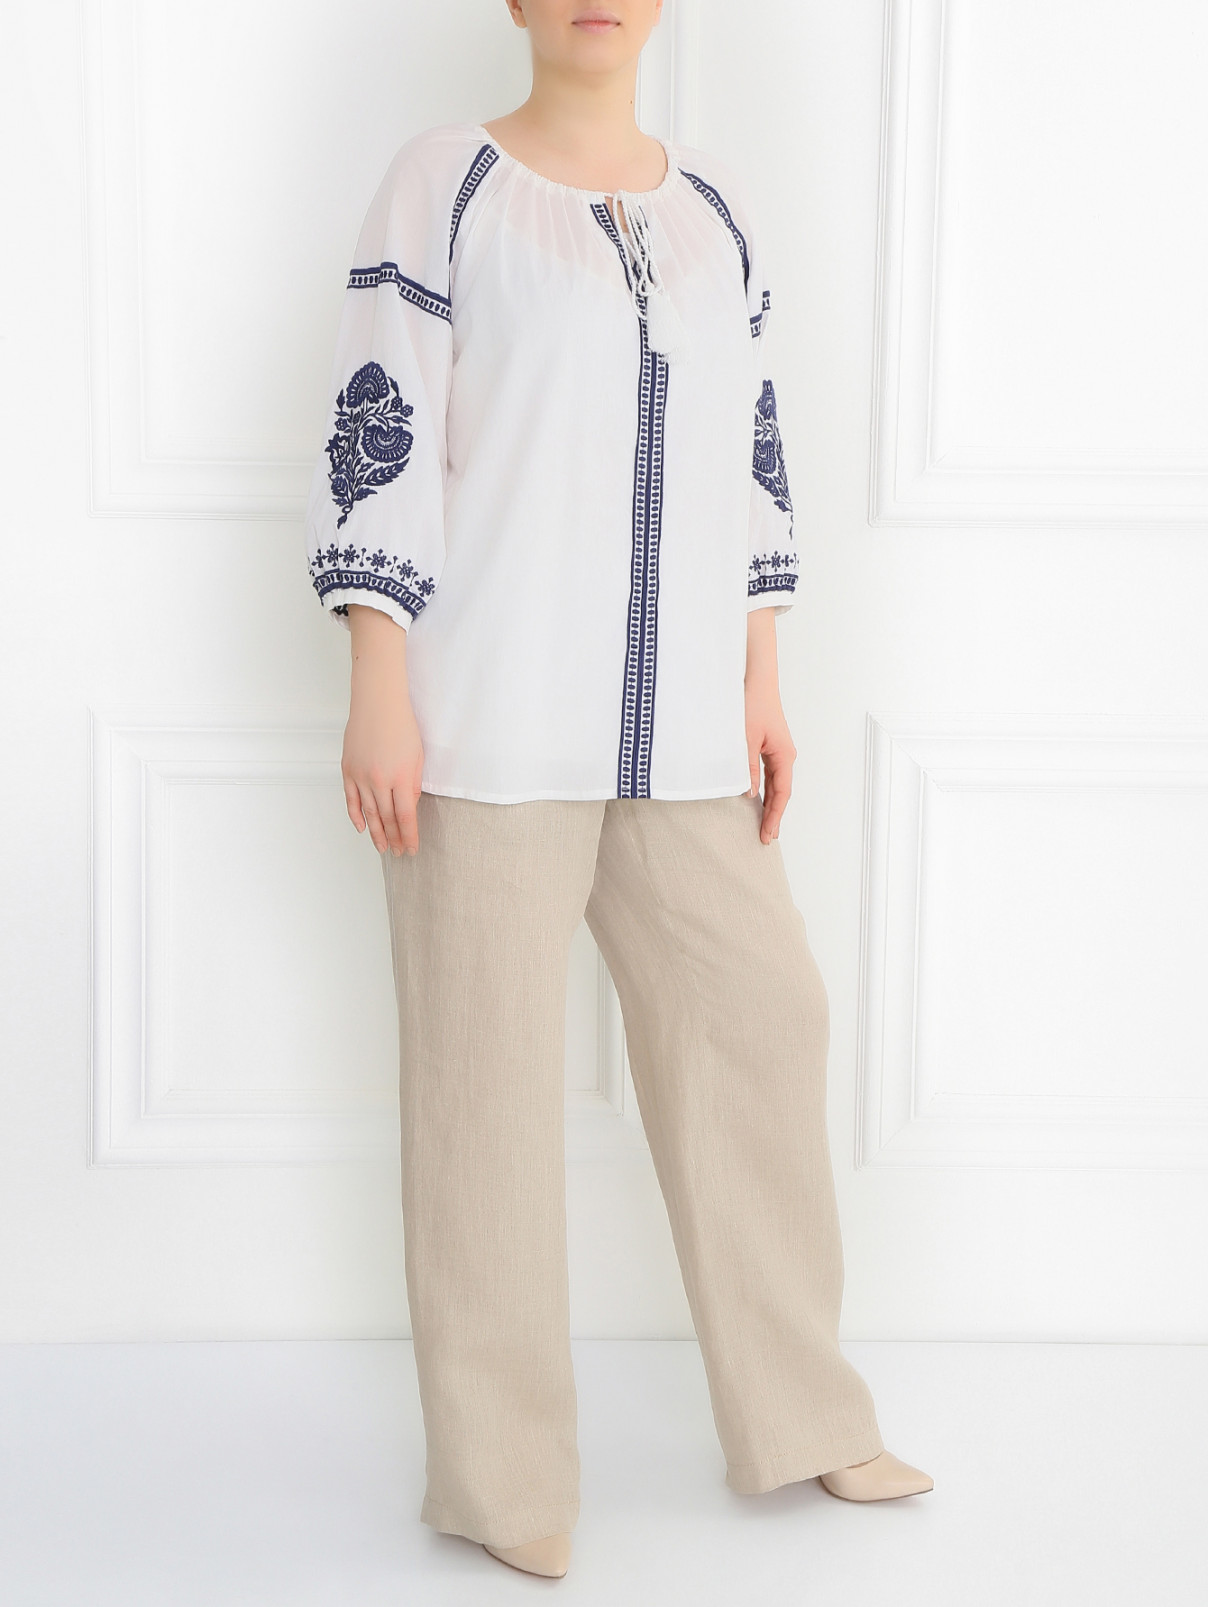 Блуза из хлопка декорированная вышивкой Marina Sport  –  Модель Общий вид  – Цвет:  Белый